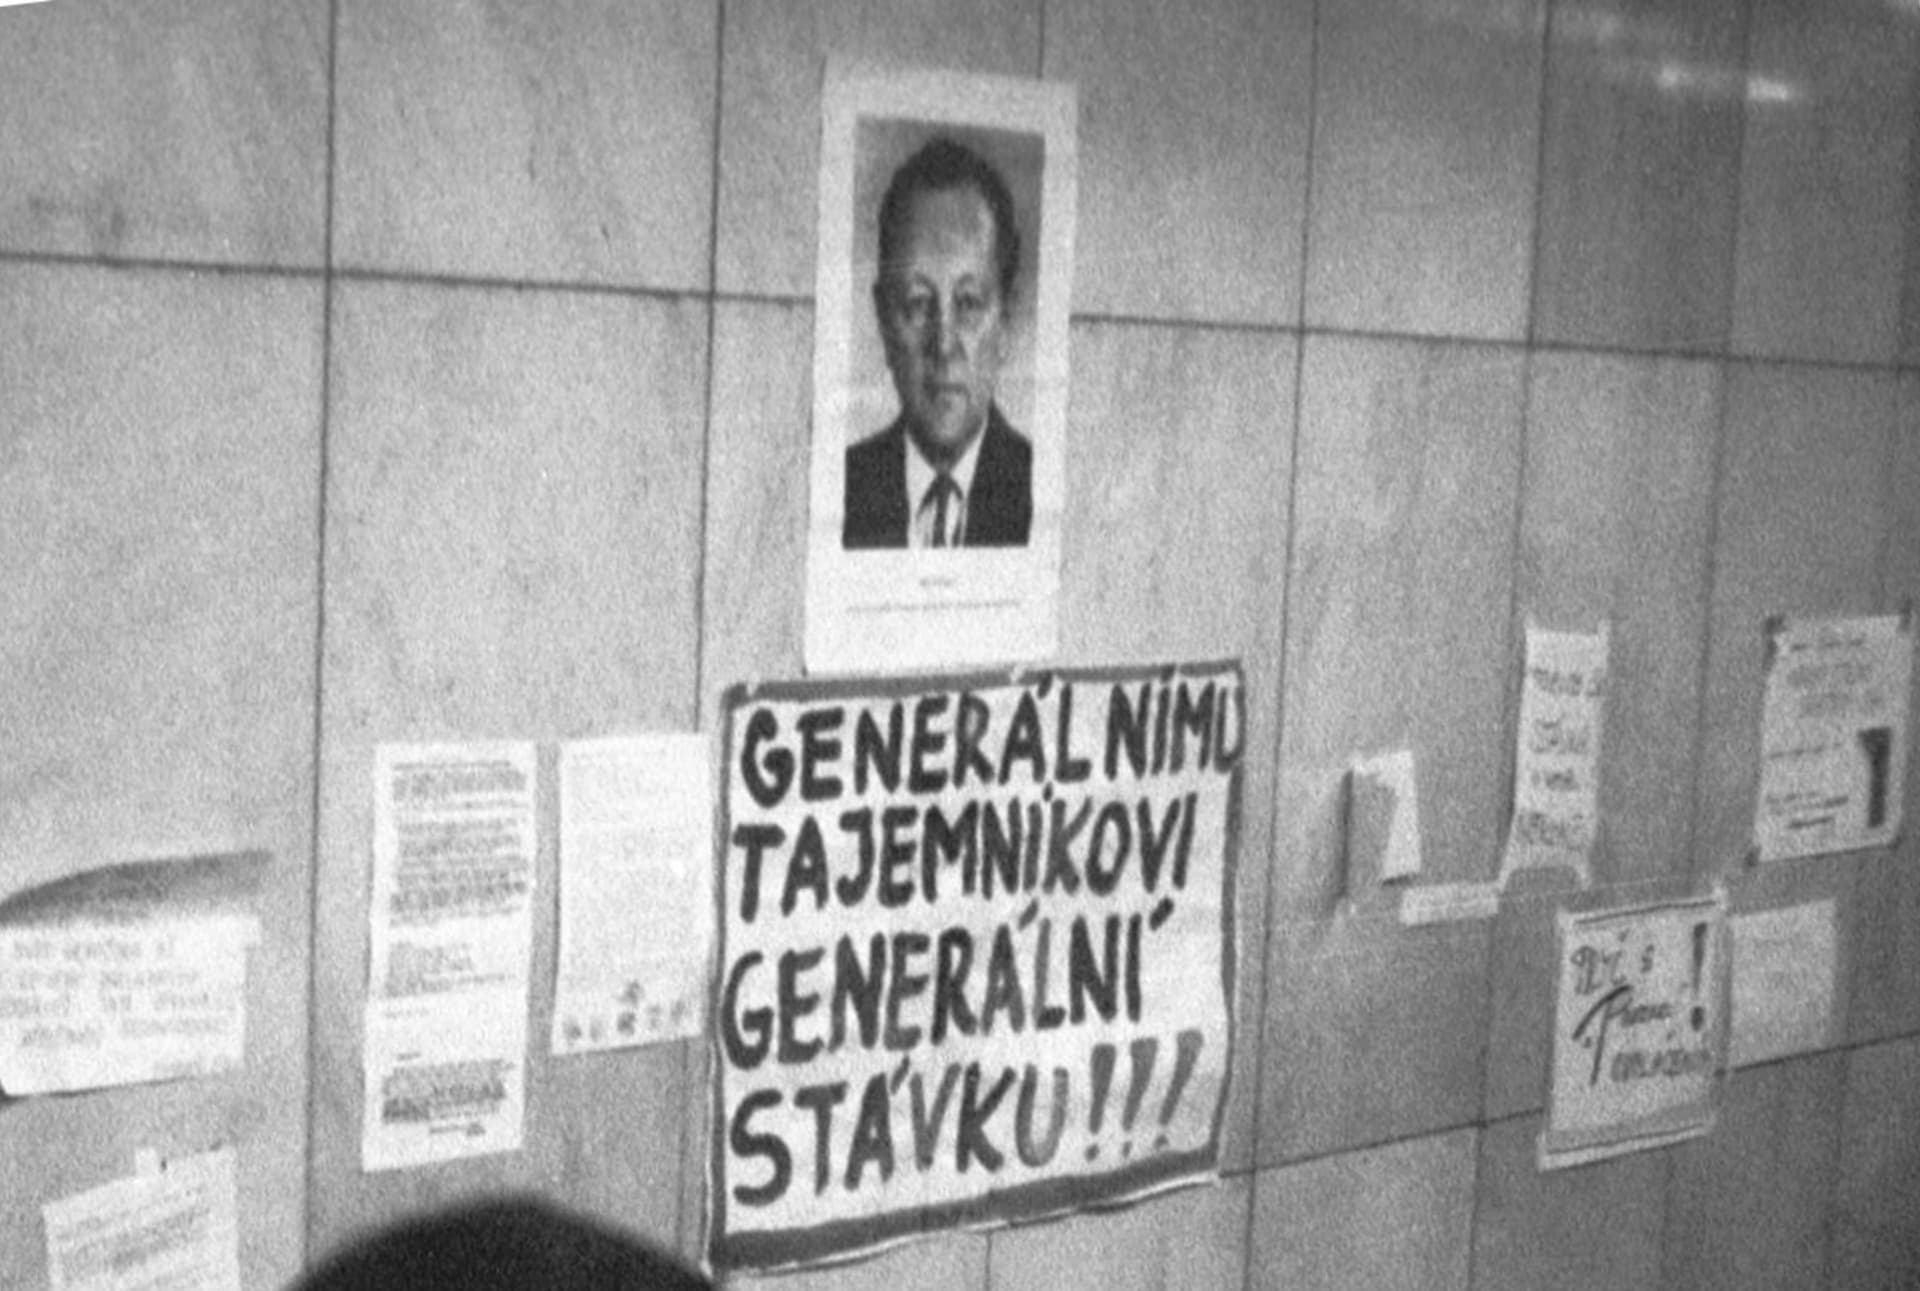 Praha 1989 a portrét Miloše Jakeše doplněný o slogan vyzývající ke generální stávce